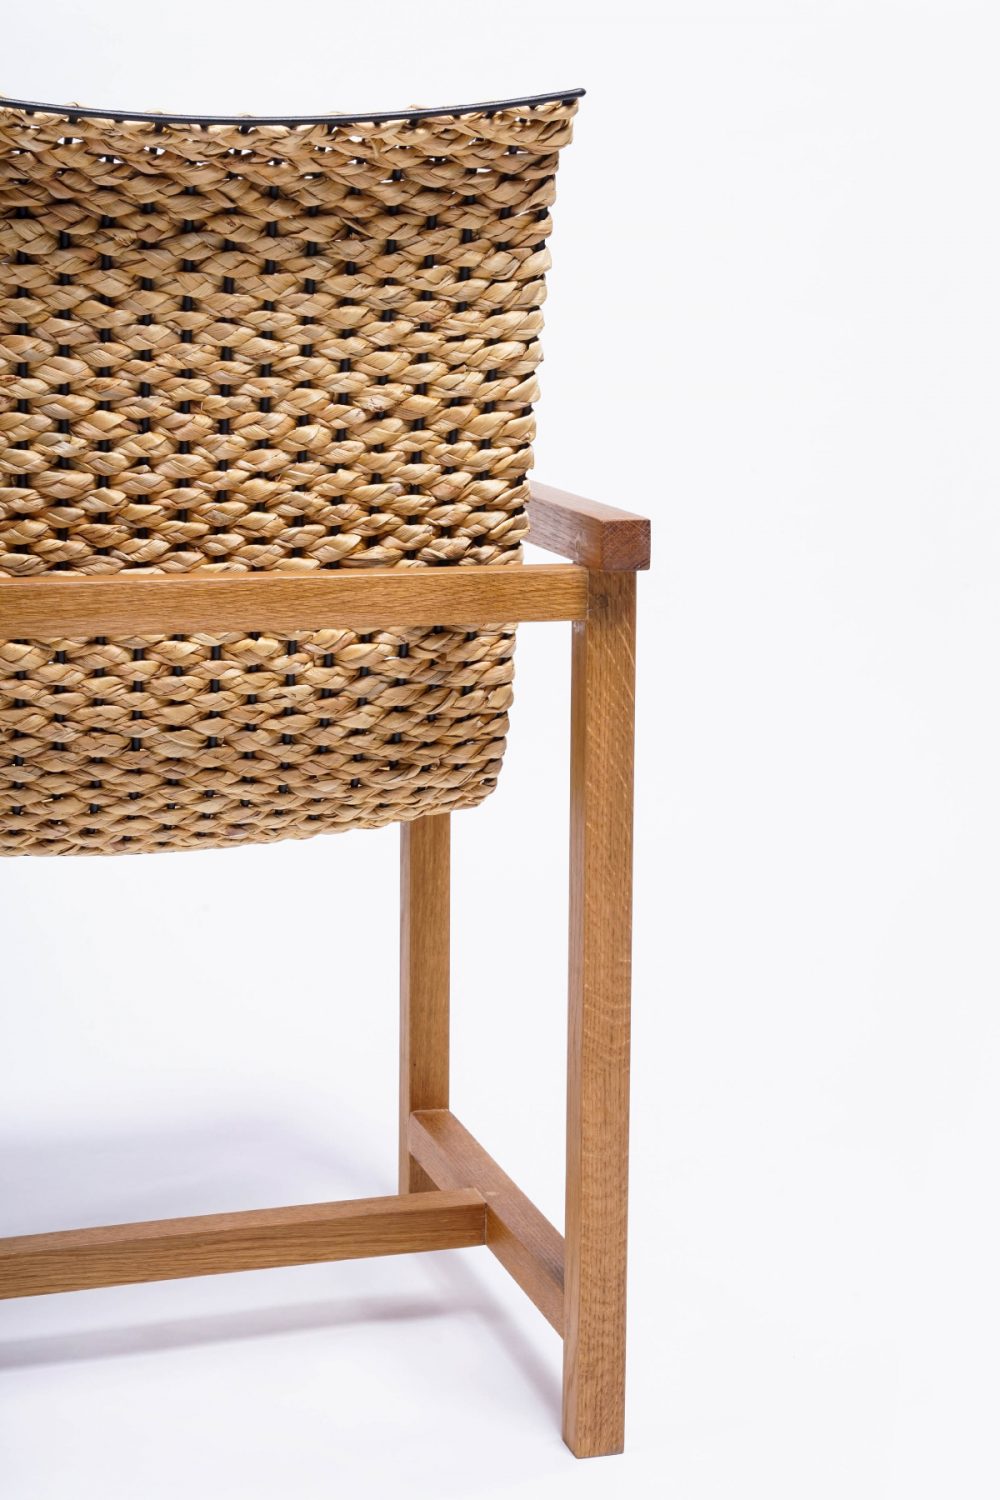 Loom Chair เก้าอี้เหล็ก เก้าอี้ไม้ รางวัล DEmark 2020 plural designs คุณพิบูลย์ อมรจิรพร